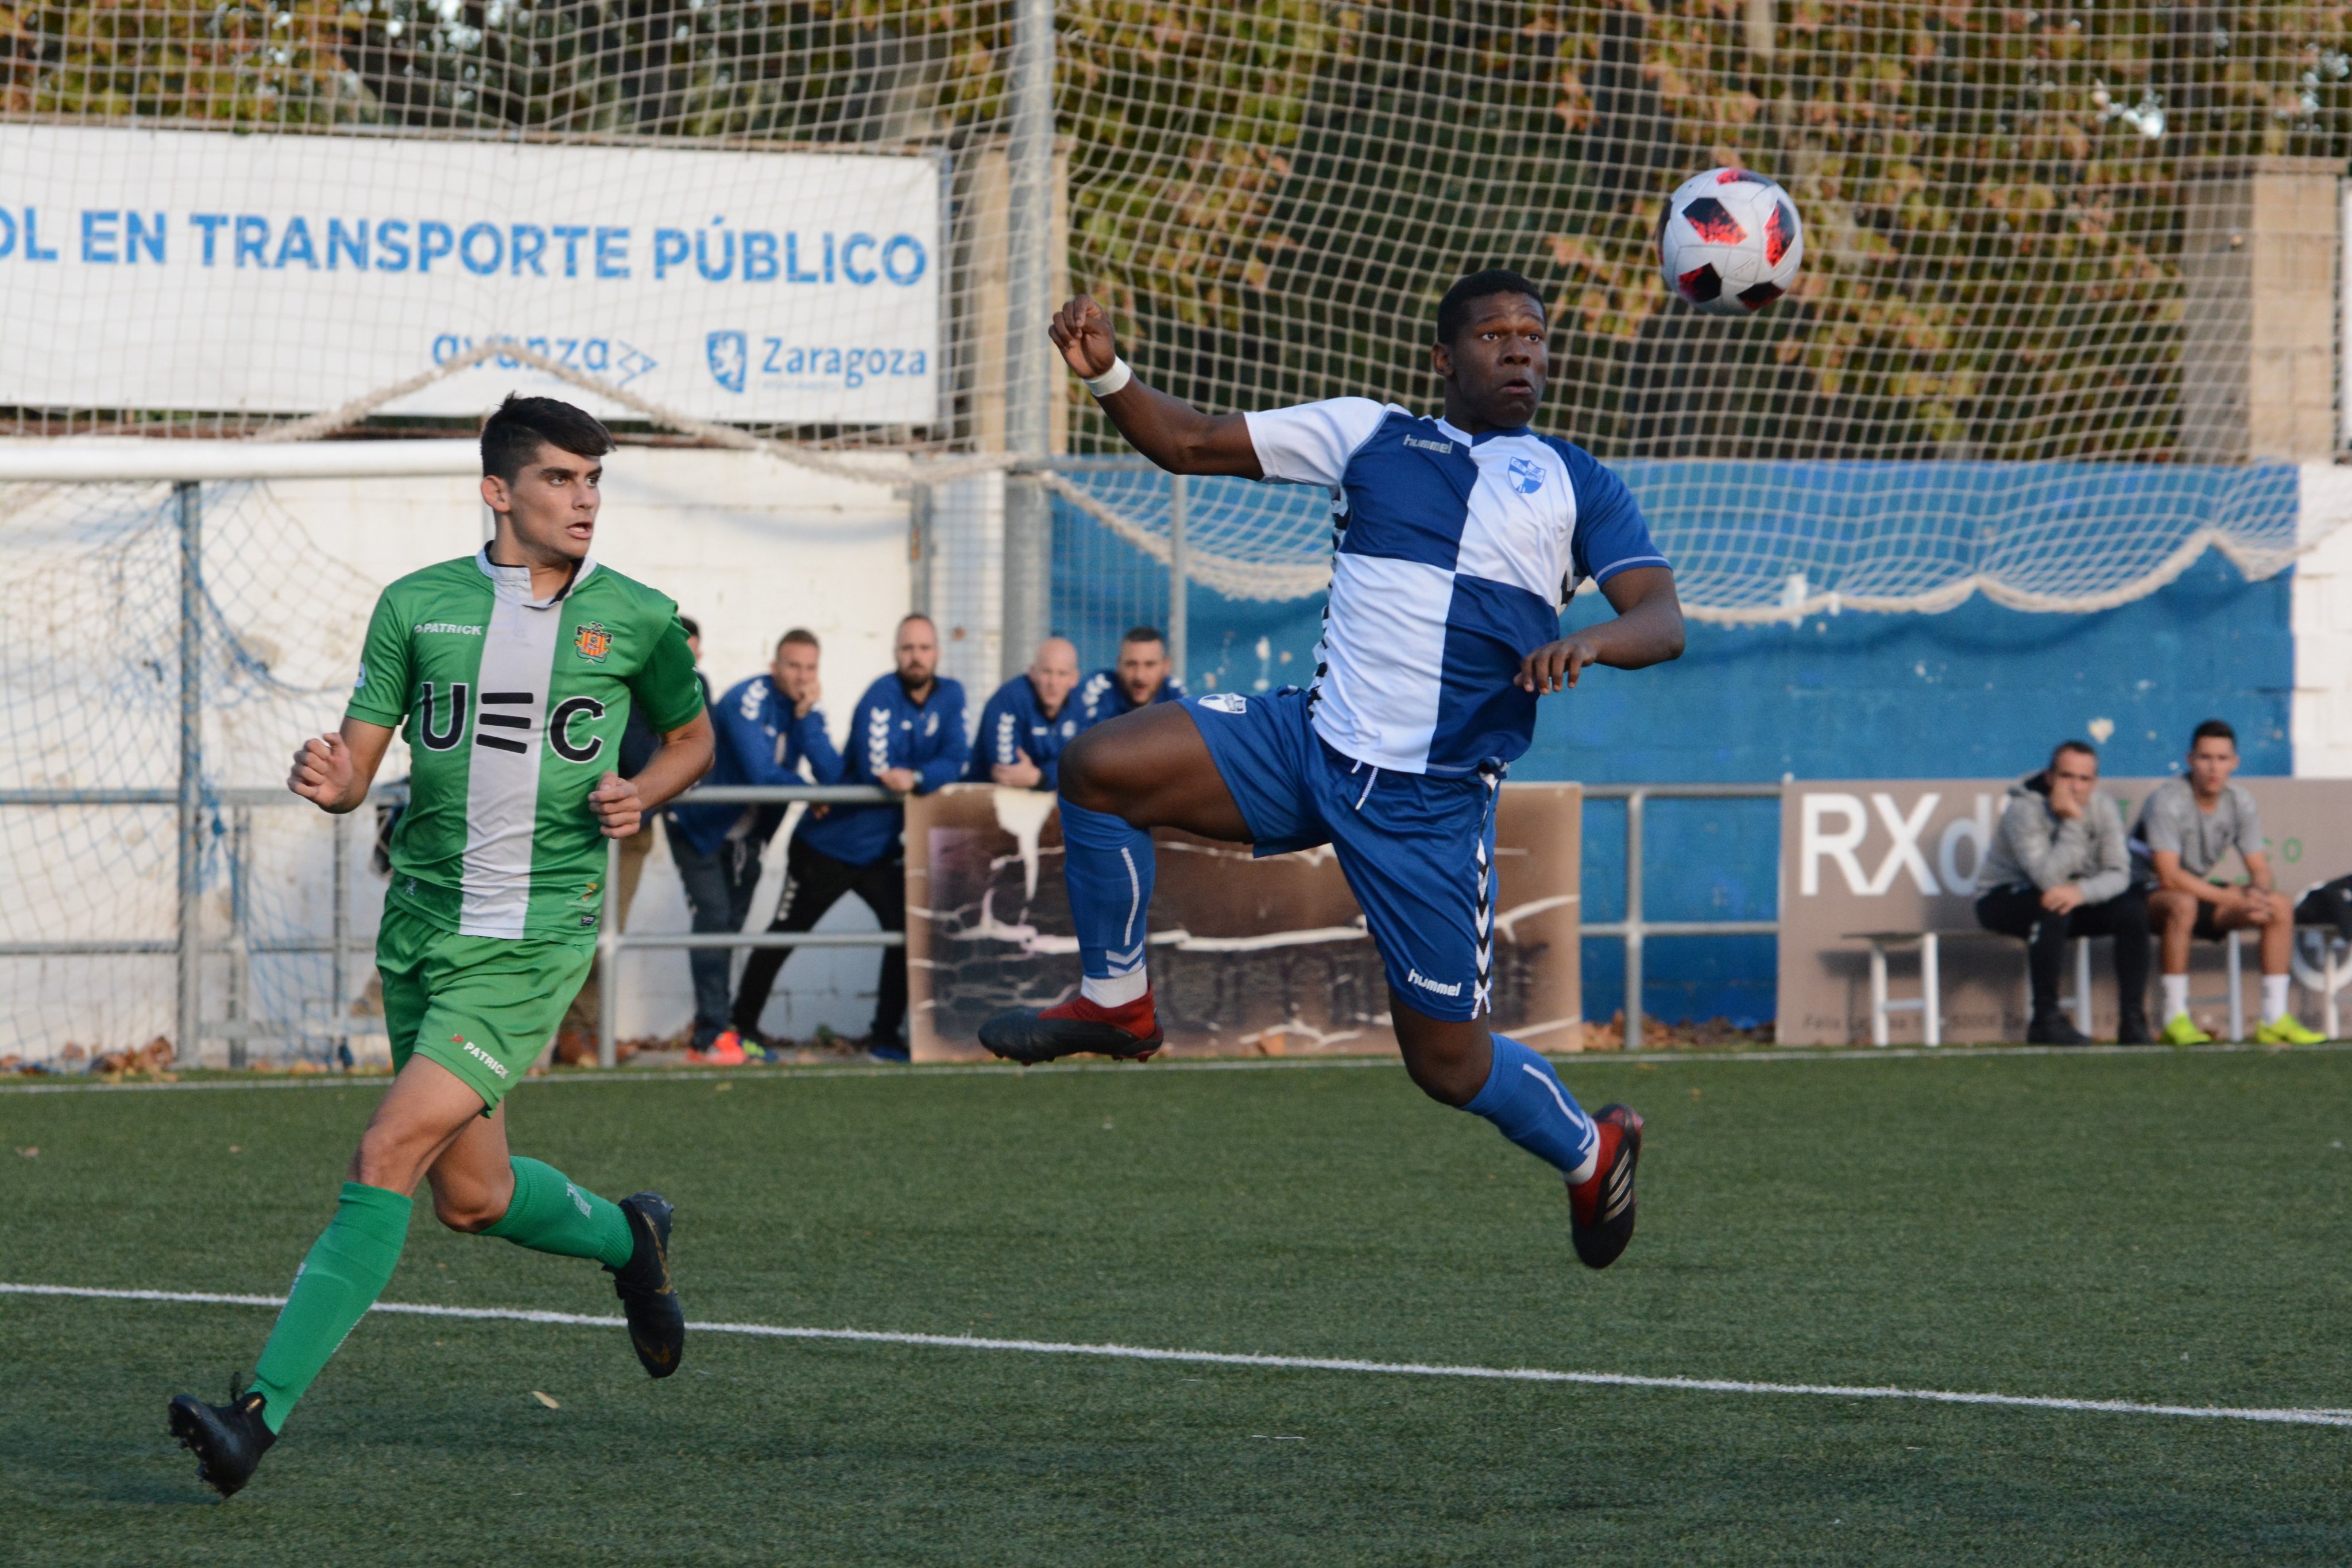 Https Www Heraldo Es Noticias Deportes Futbol Sd Huesca 2019 11 Images, Photos, Reviews